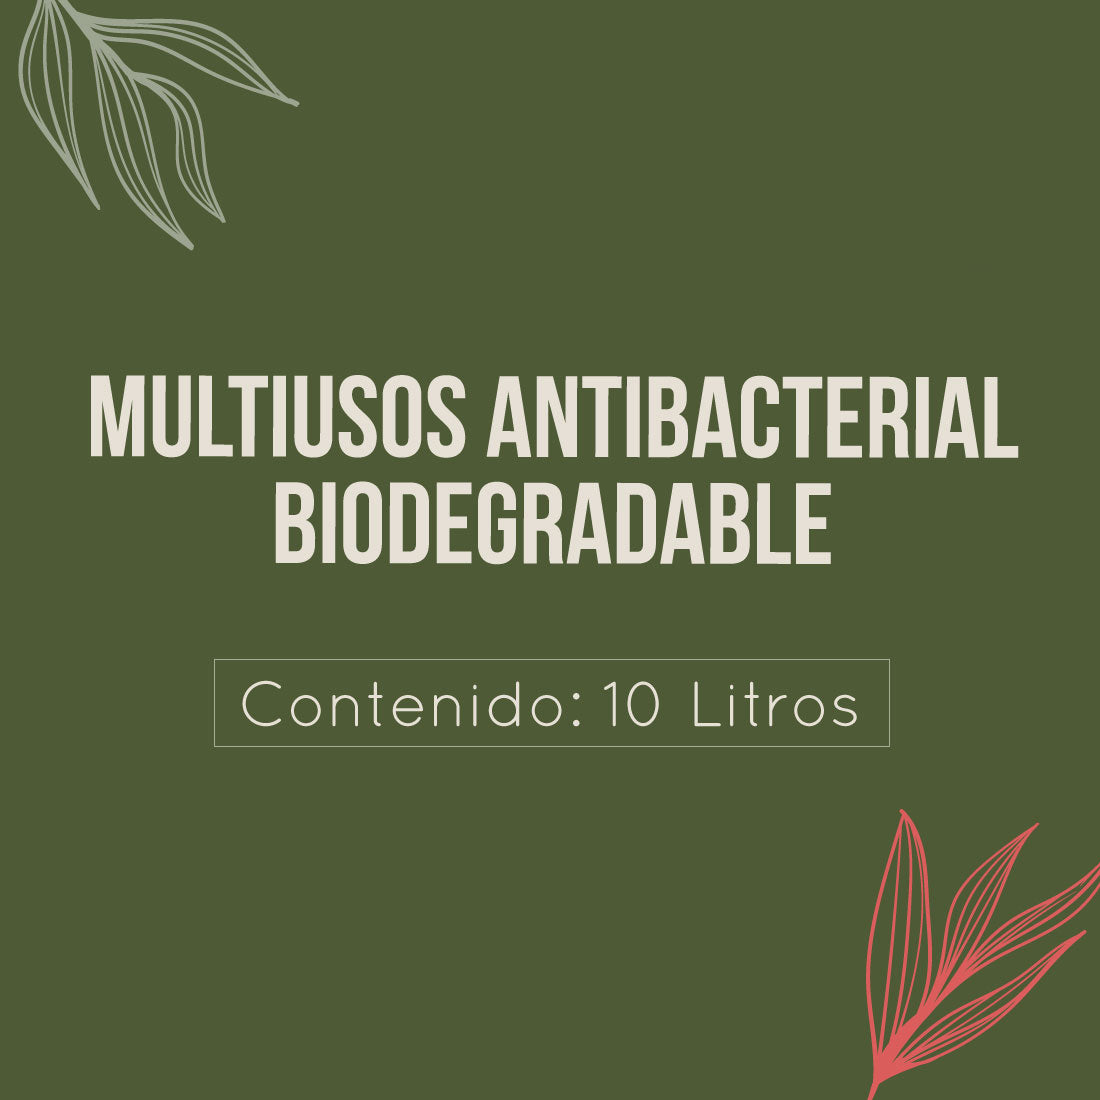 Multiusos Antibacterial Biodegradable